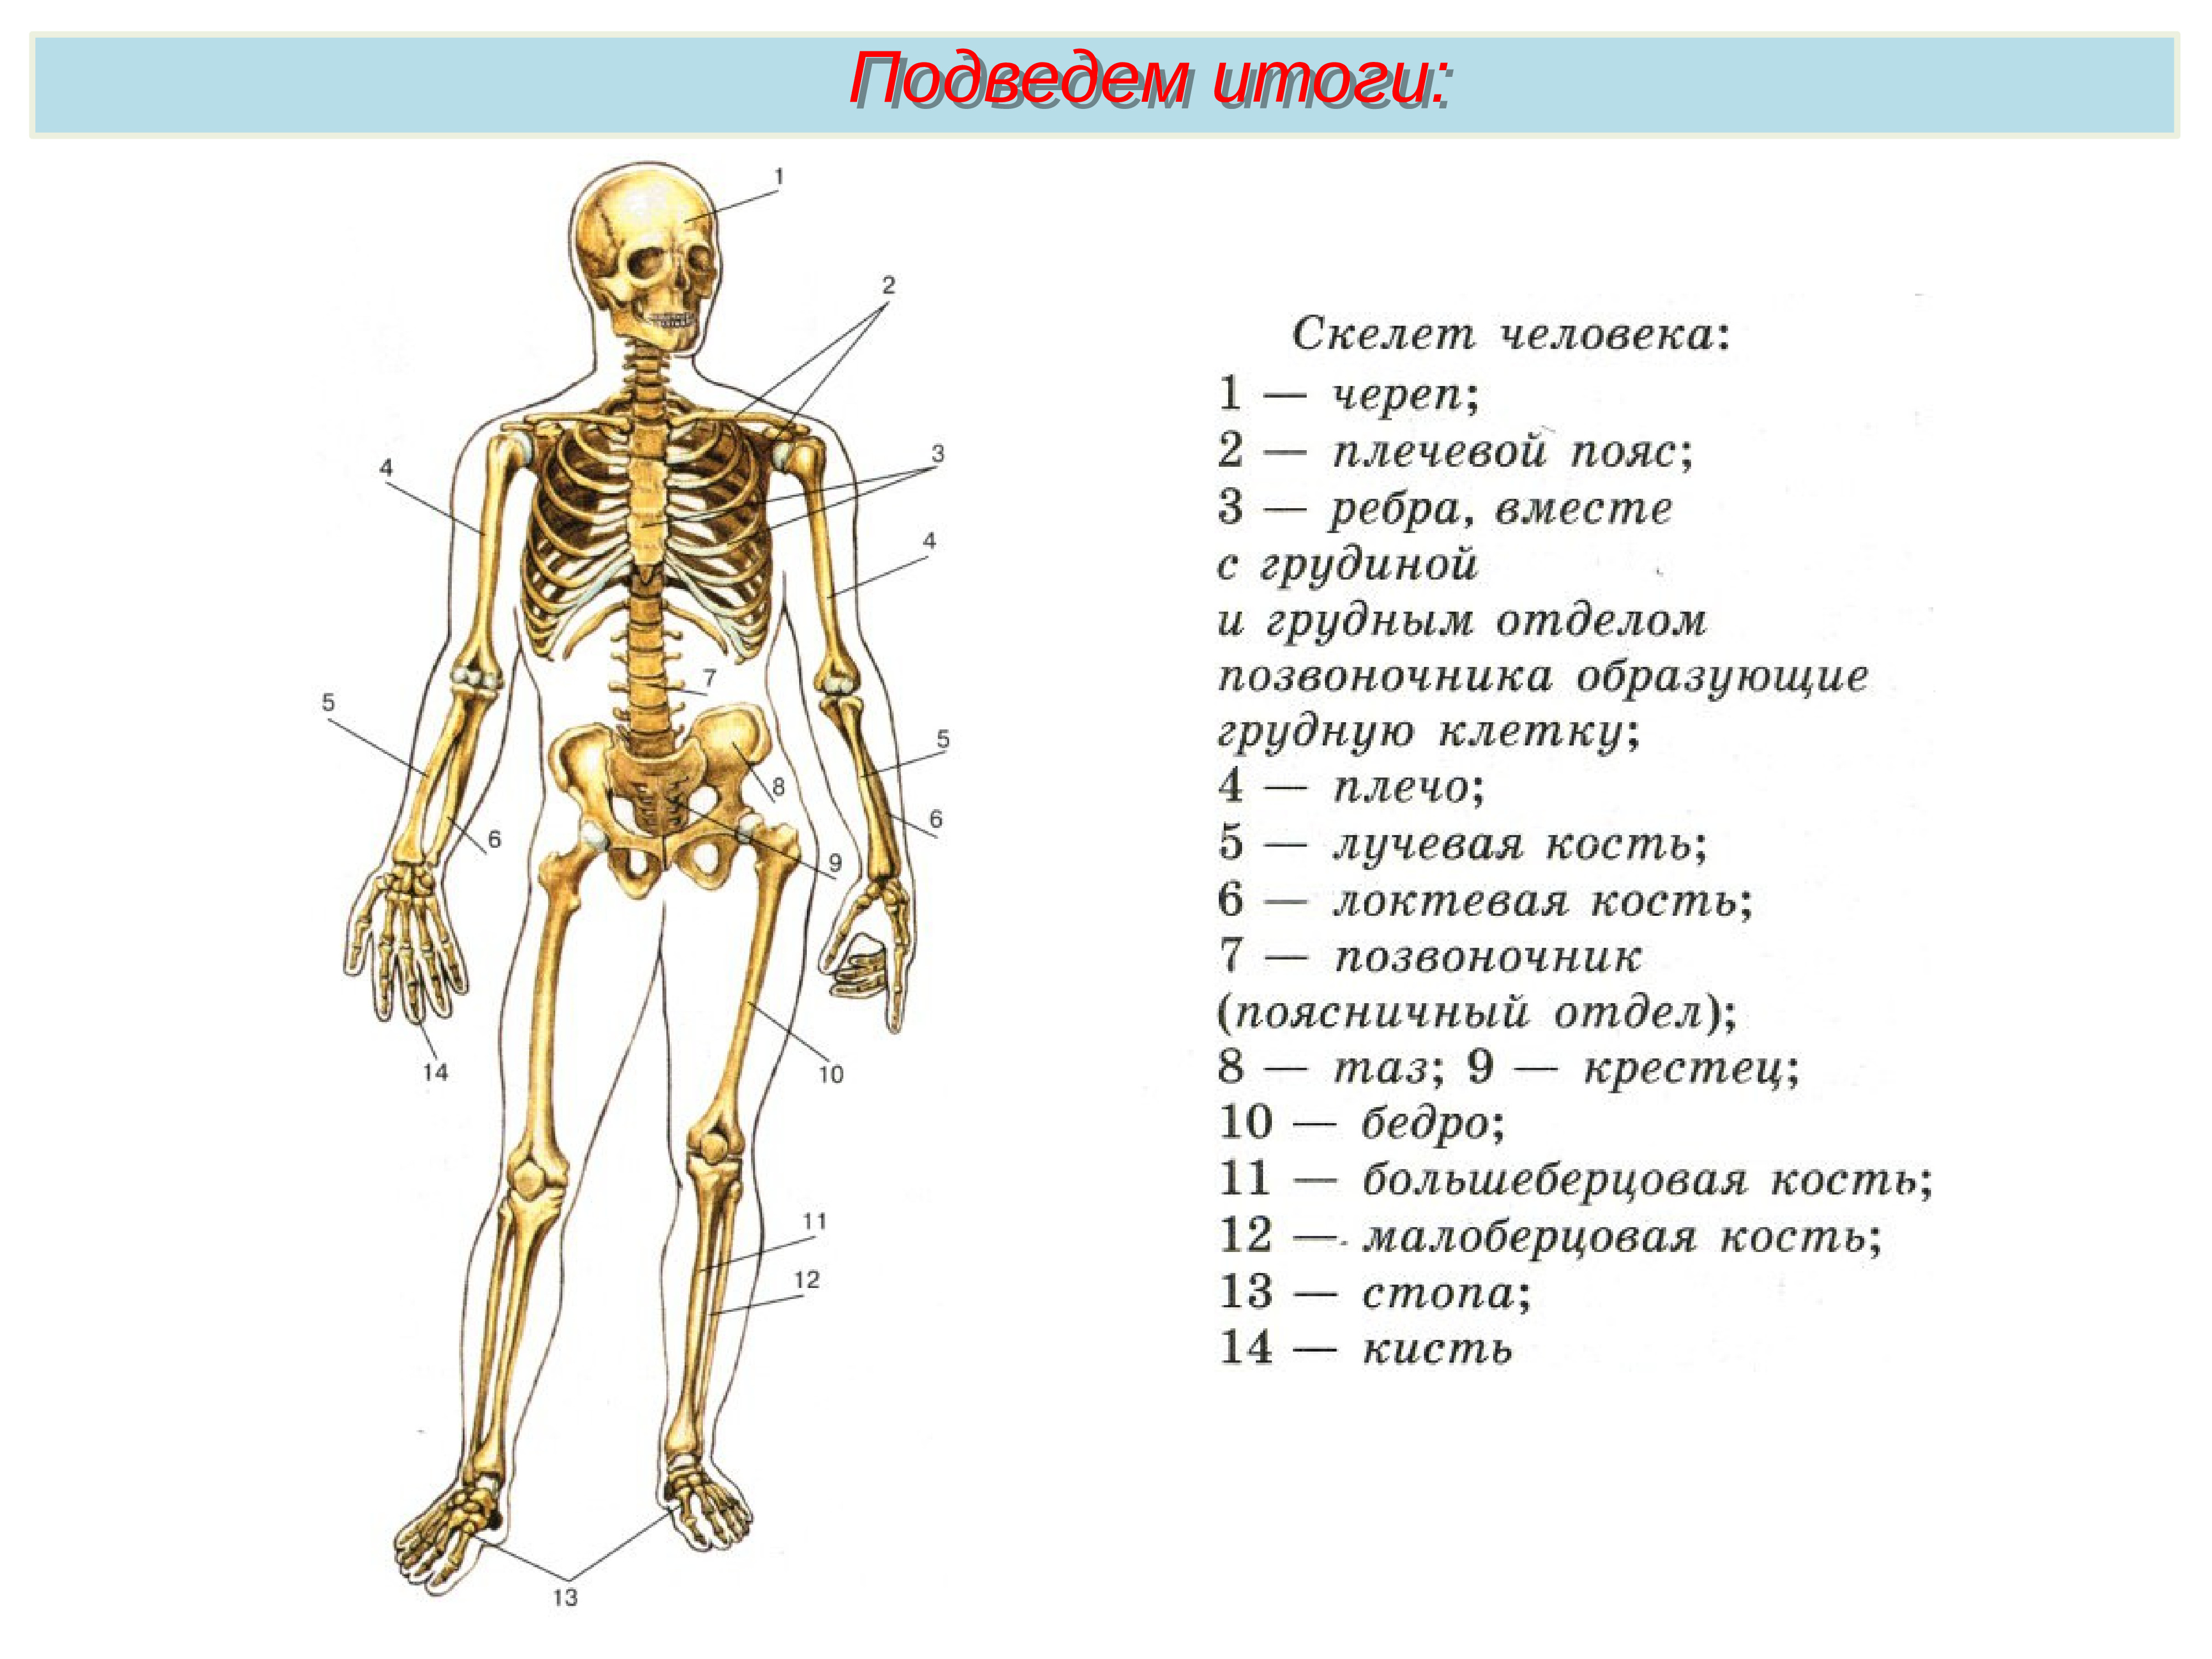 Подпишите названия костей скелета. Биология 8 класс скелет строение состав и соединение костей. Кости скелета биология 8 класс. Строение состав и соединение костей 8 класс. Кости скелета строение скелета 8 класс биология.